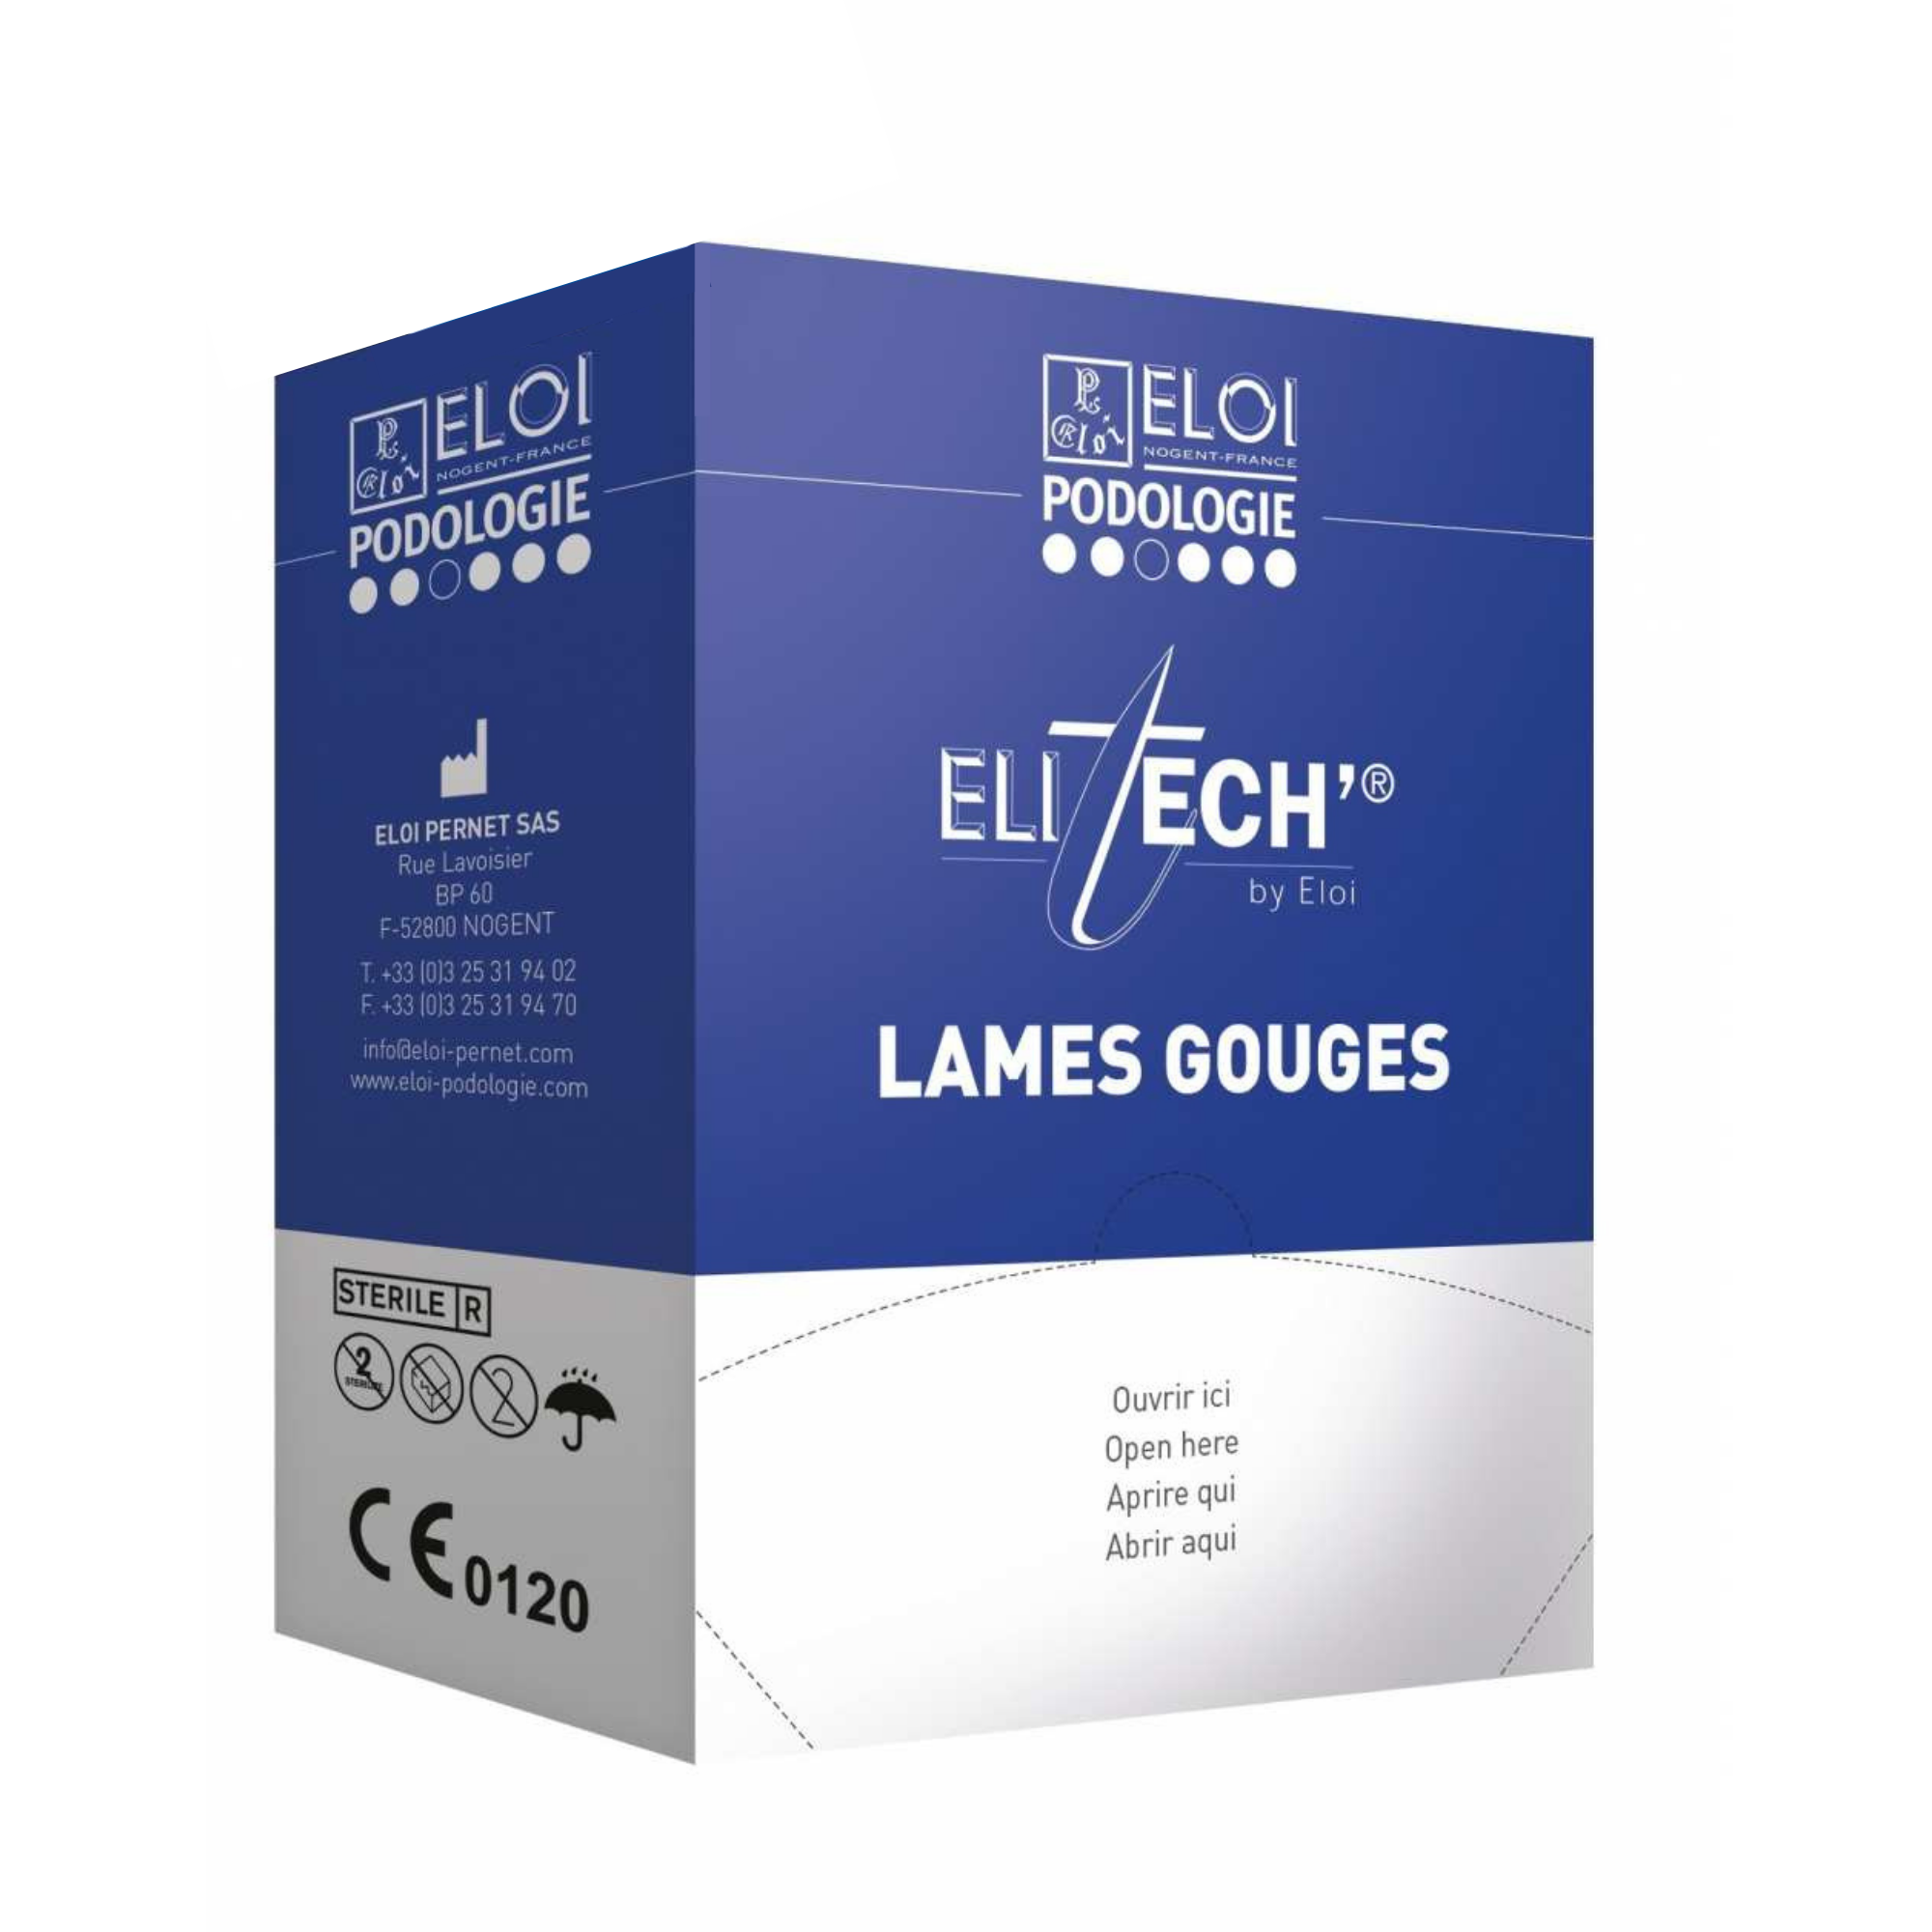 500 lames de gouges N°2 - Elitech by Eloi Eloi Podologie